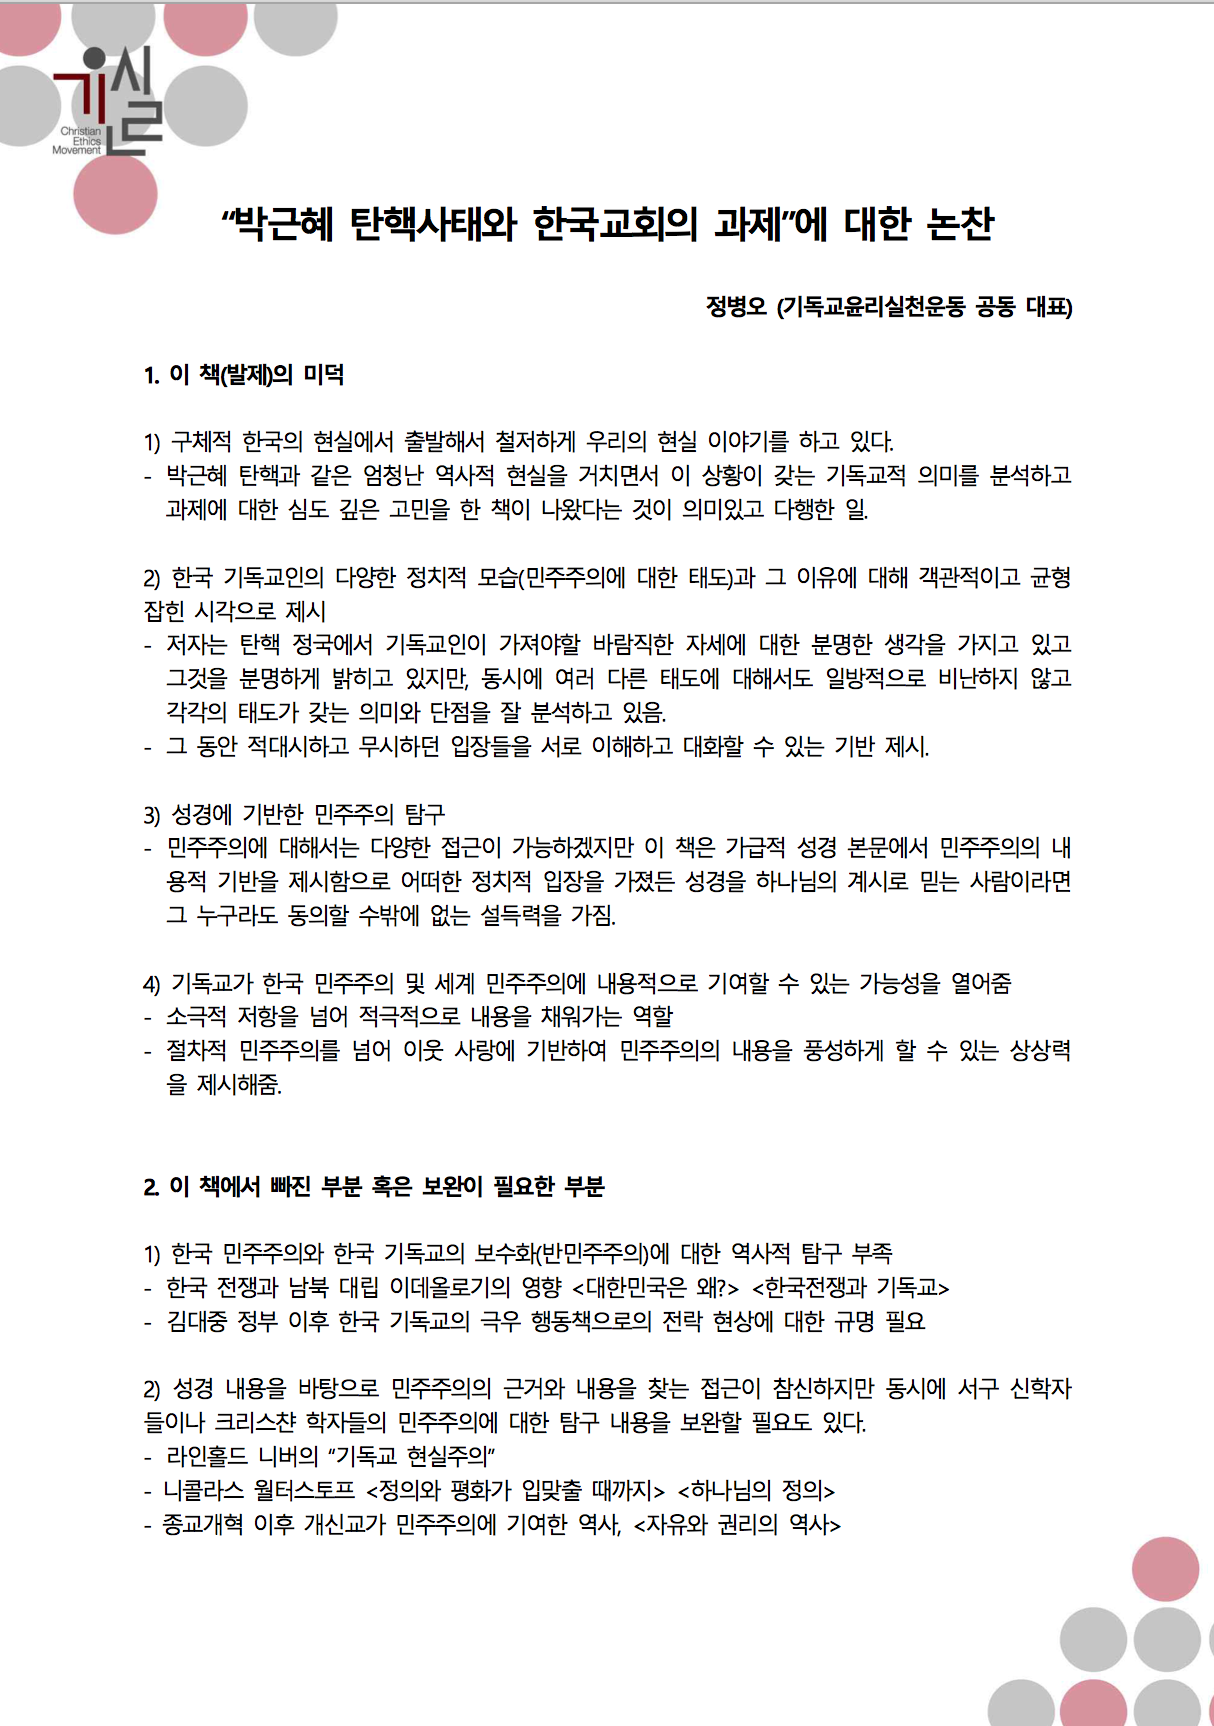 박근혜탄핵사태와한국교회의과제-발제초고(이병주);